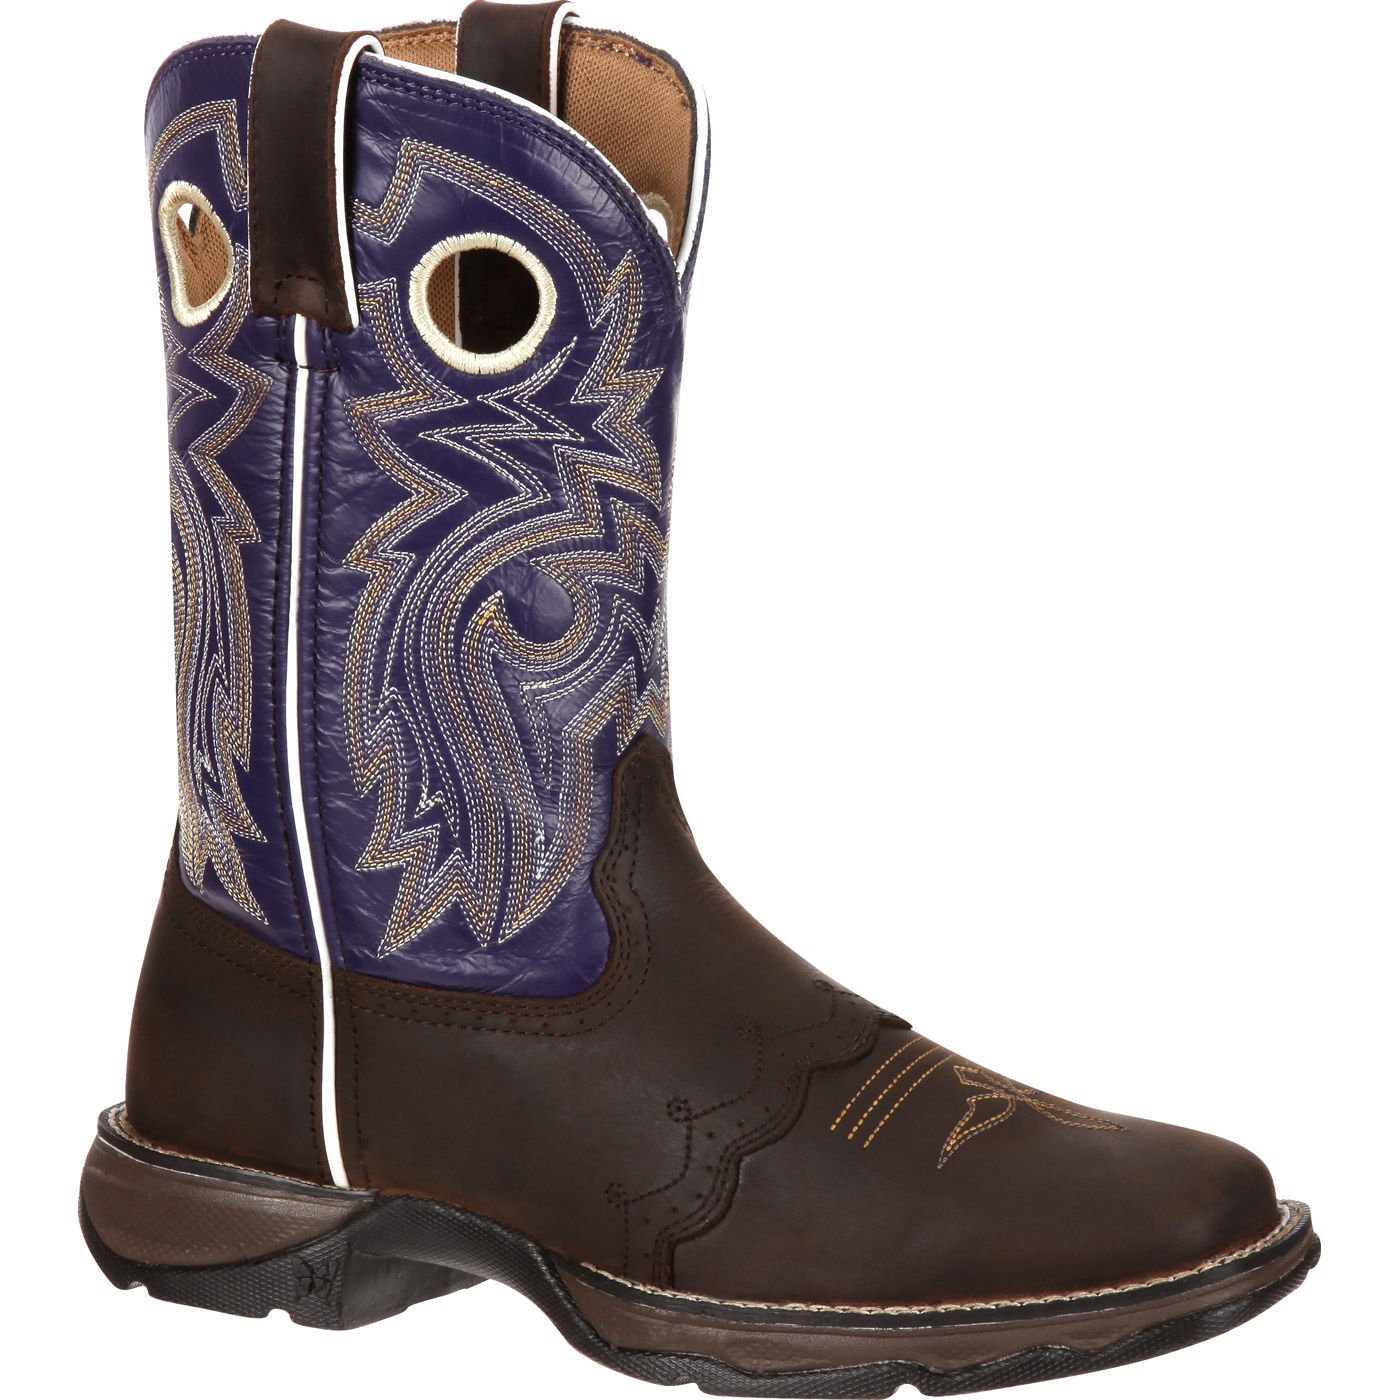 Lady Durango Women's Twilight n' Lace Saddle Western Boot Size 9.5(M) - image 1 of 7